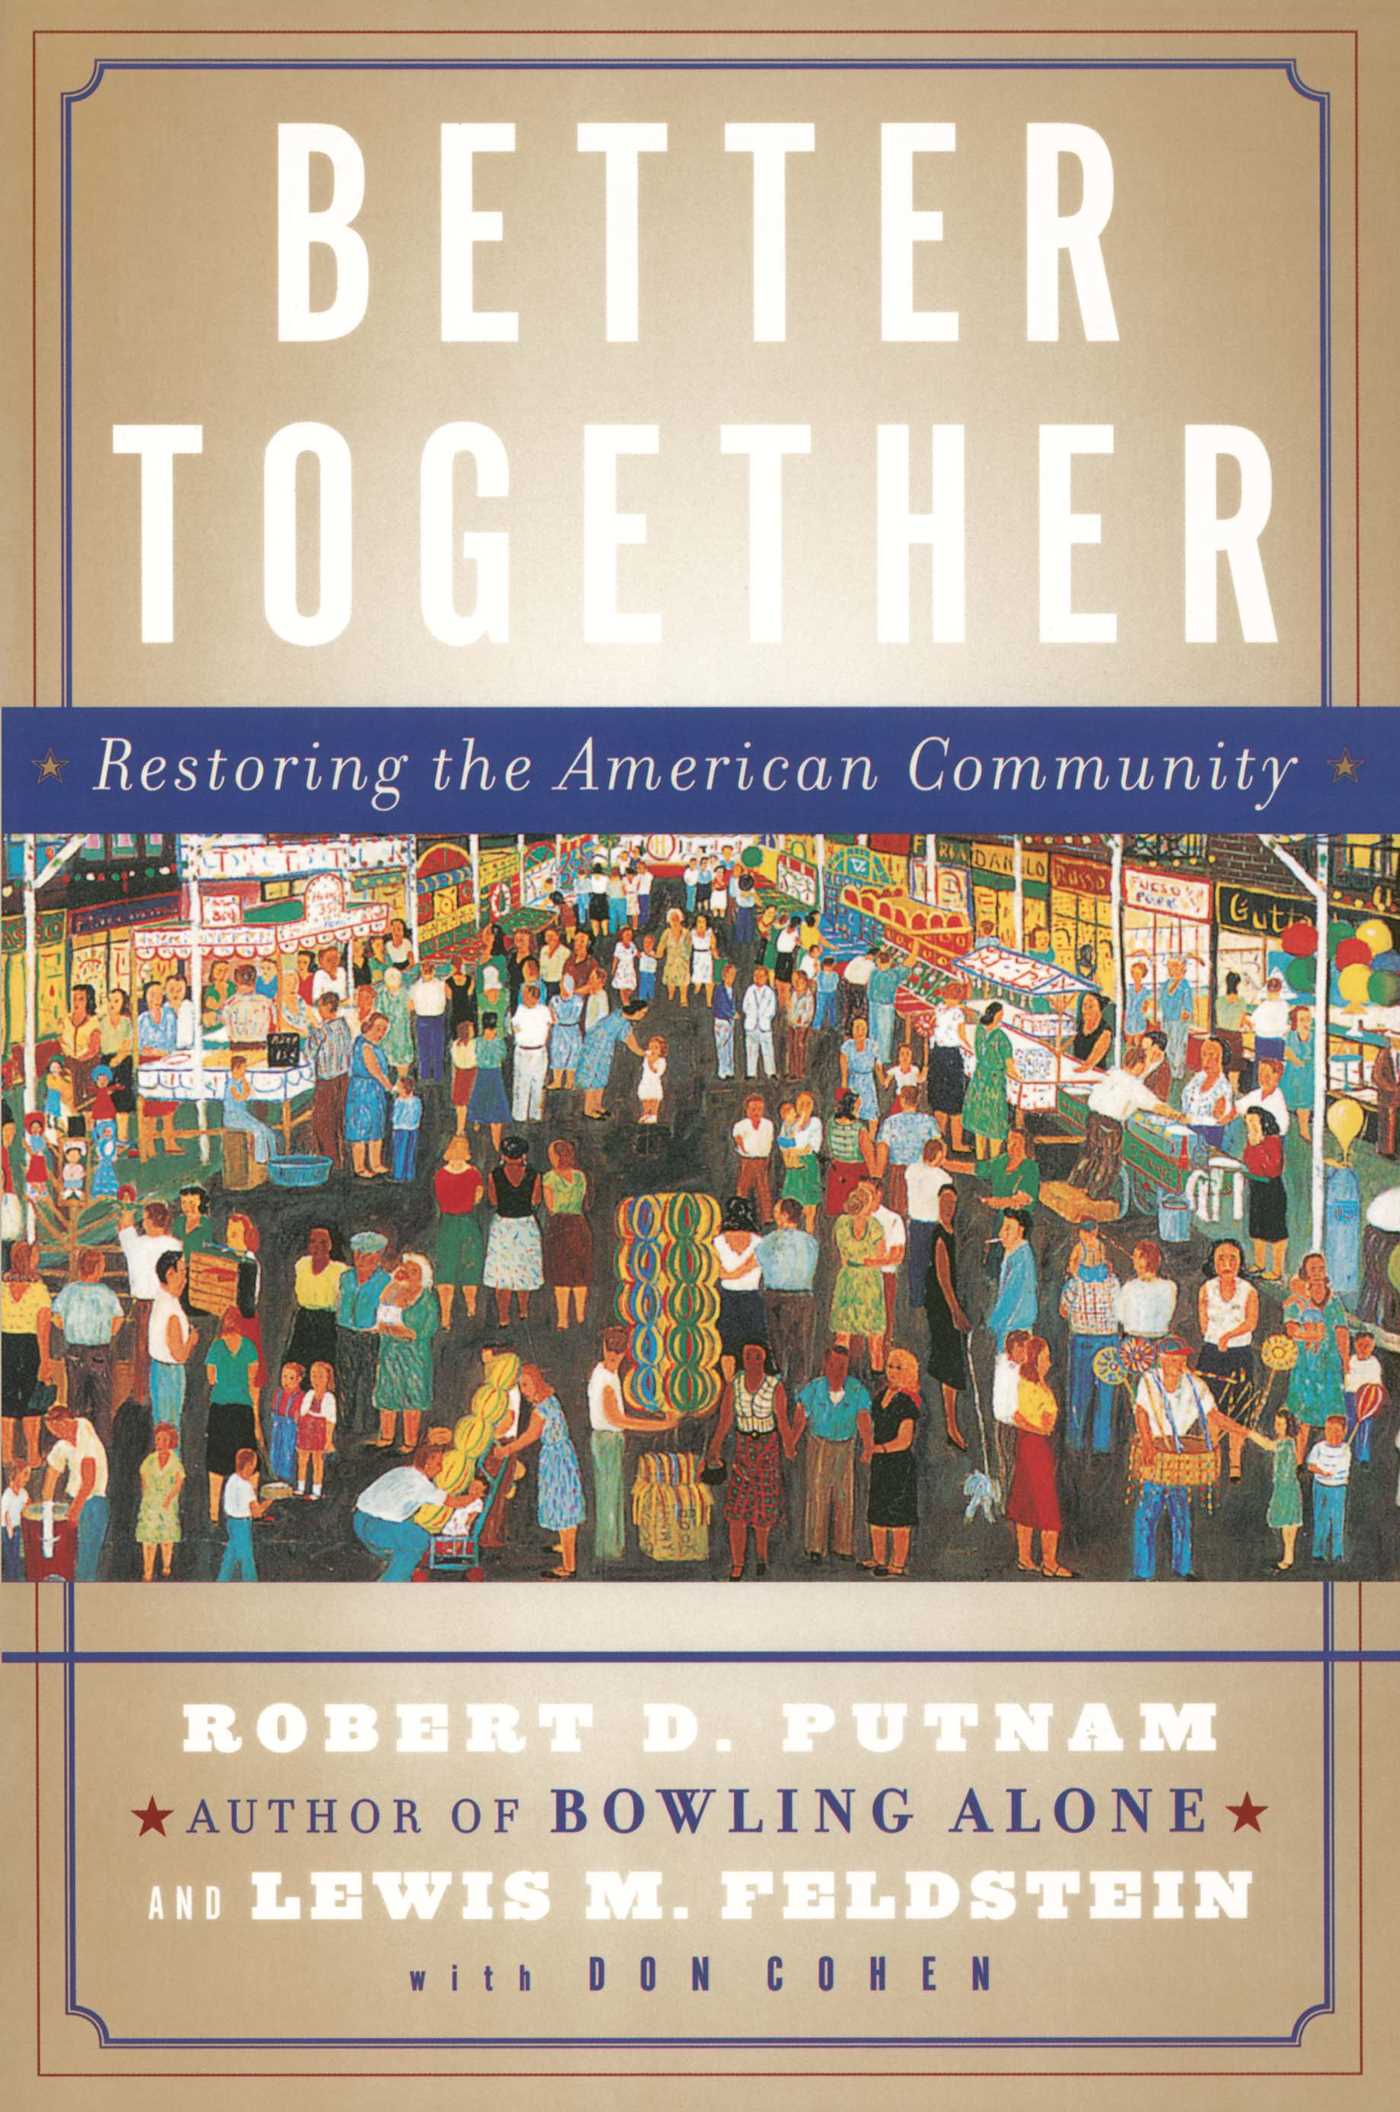 Better Together by Robert Putnam